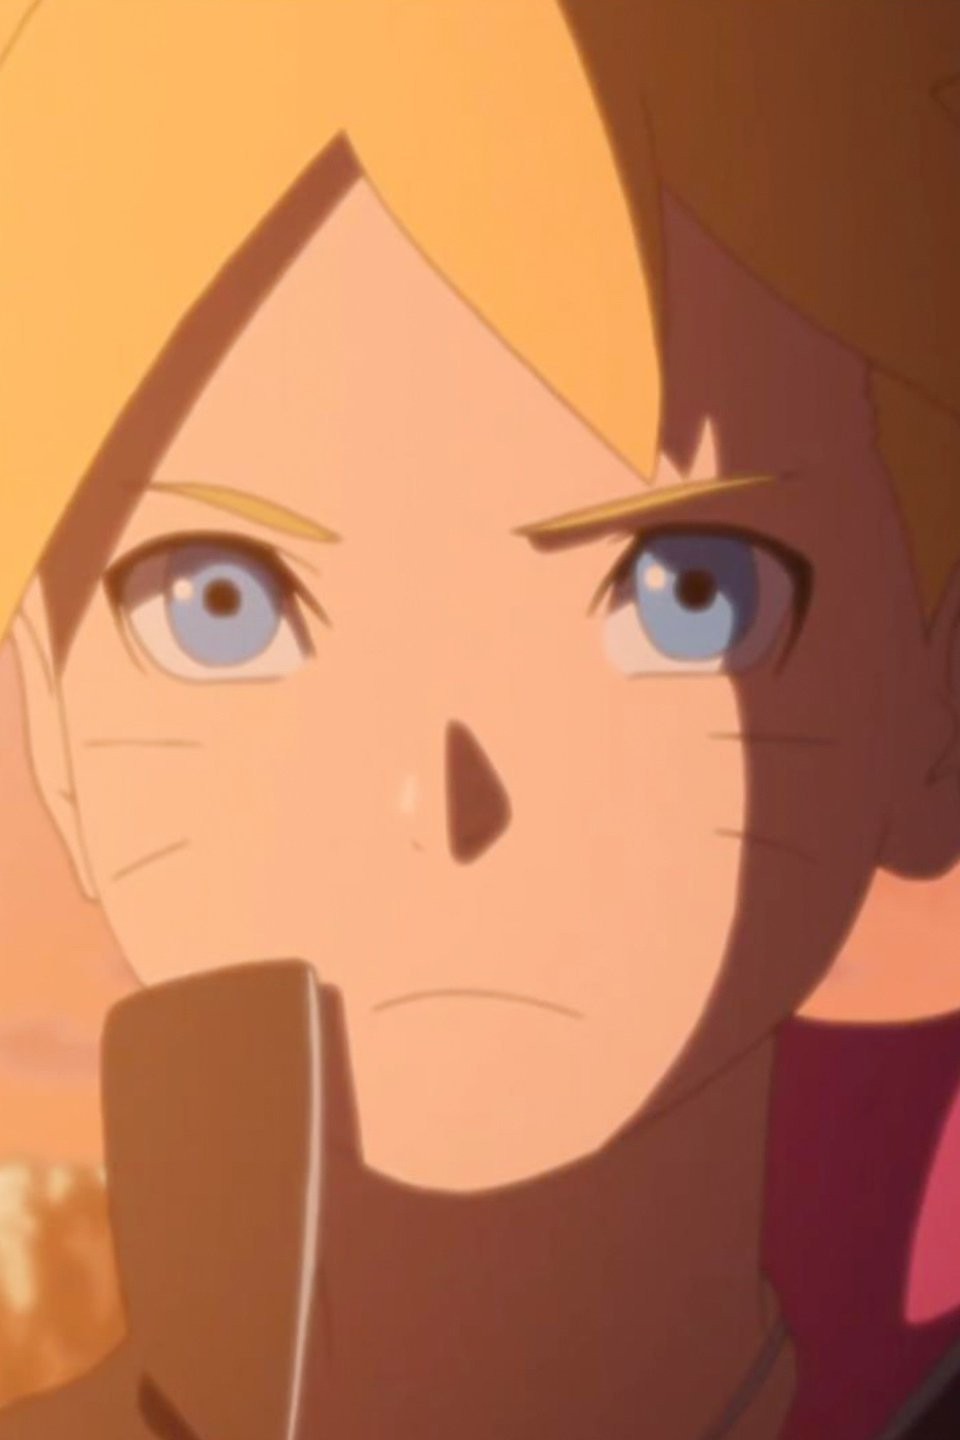 Boruto: Naruto Next Generations Episode 235 - Anime Review